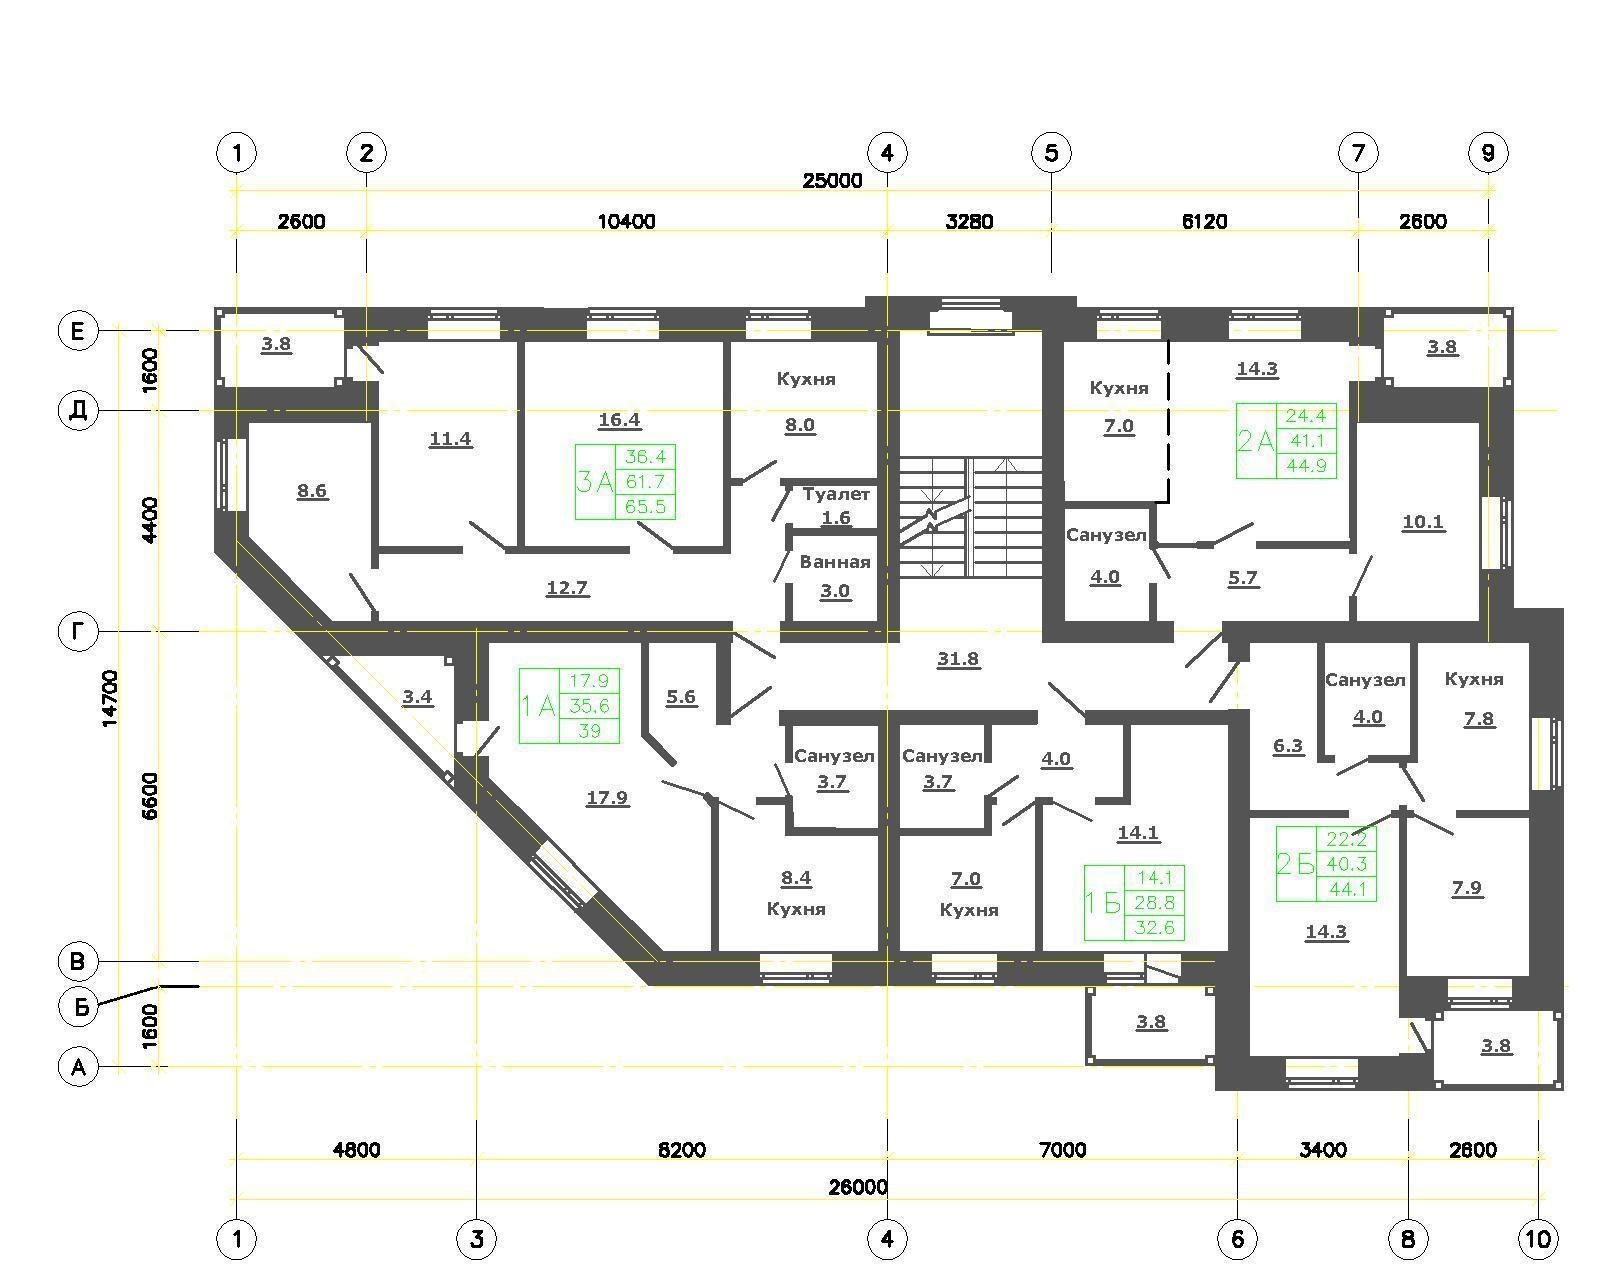 Типовой этаж дома. План первого этажа многоэтажного жилого. План 1 этажа многоэтажного жилого дома чертеж. План первого этажа МКД. План 1 этажа многоквартирного жилого дома чертеж.